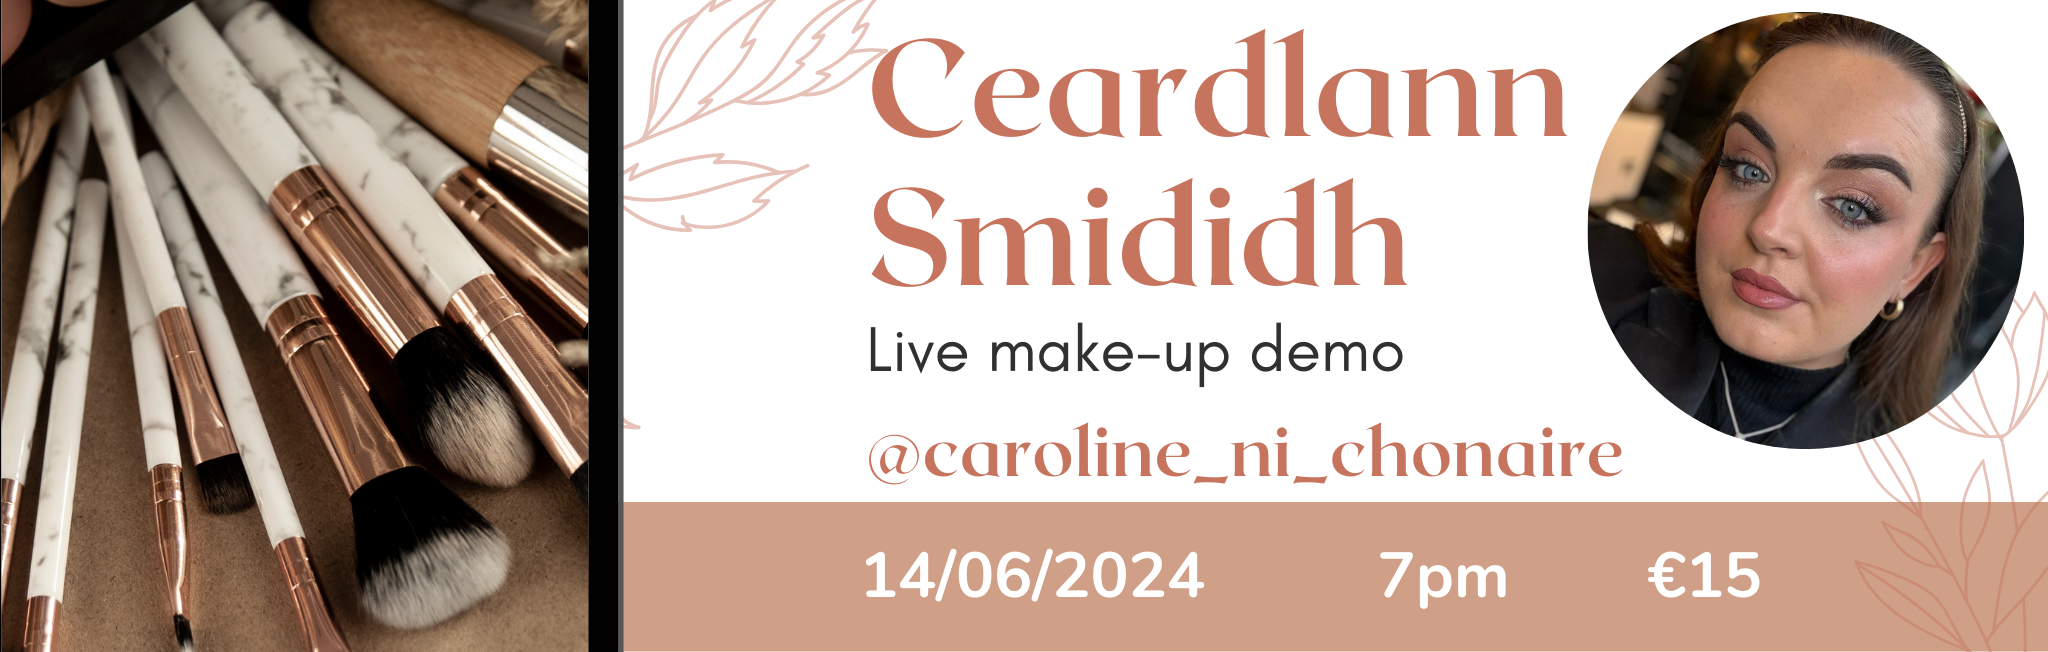 Ceardlann Smididh le Caroline Ní Chonaire